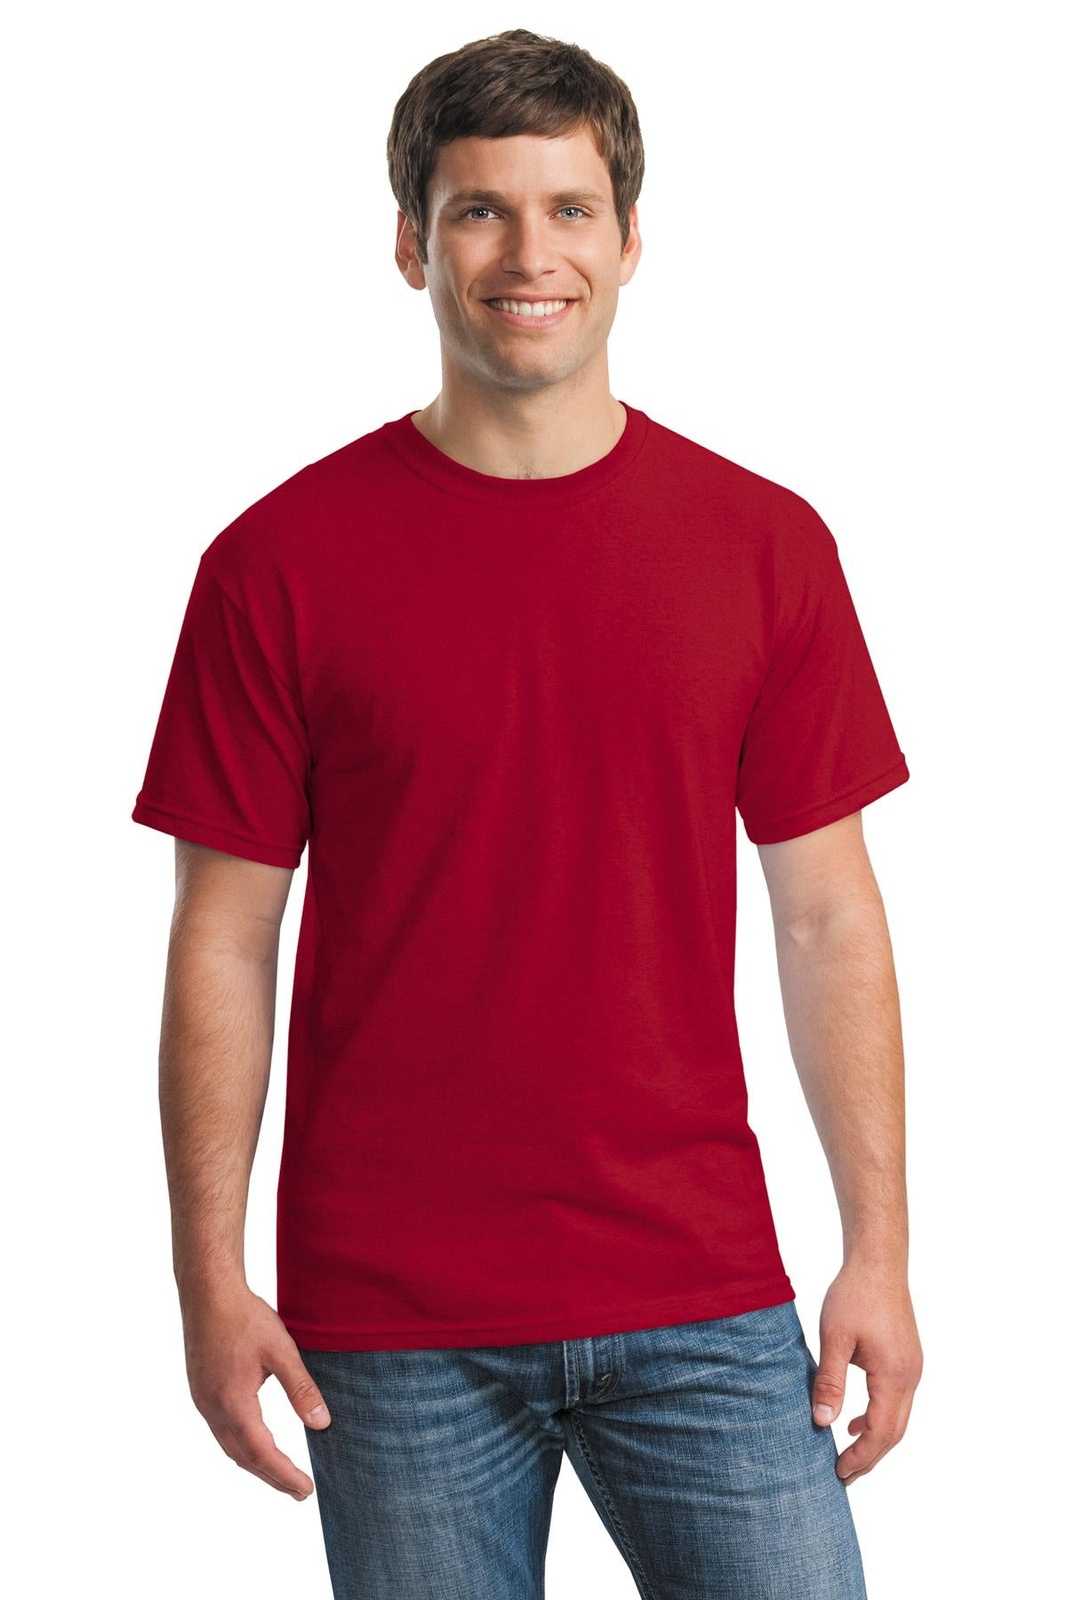 Gildan 5000 Heavy Cotton 100% Cotton T-Shirt - Antique Cherry Red - HIT a Double